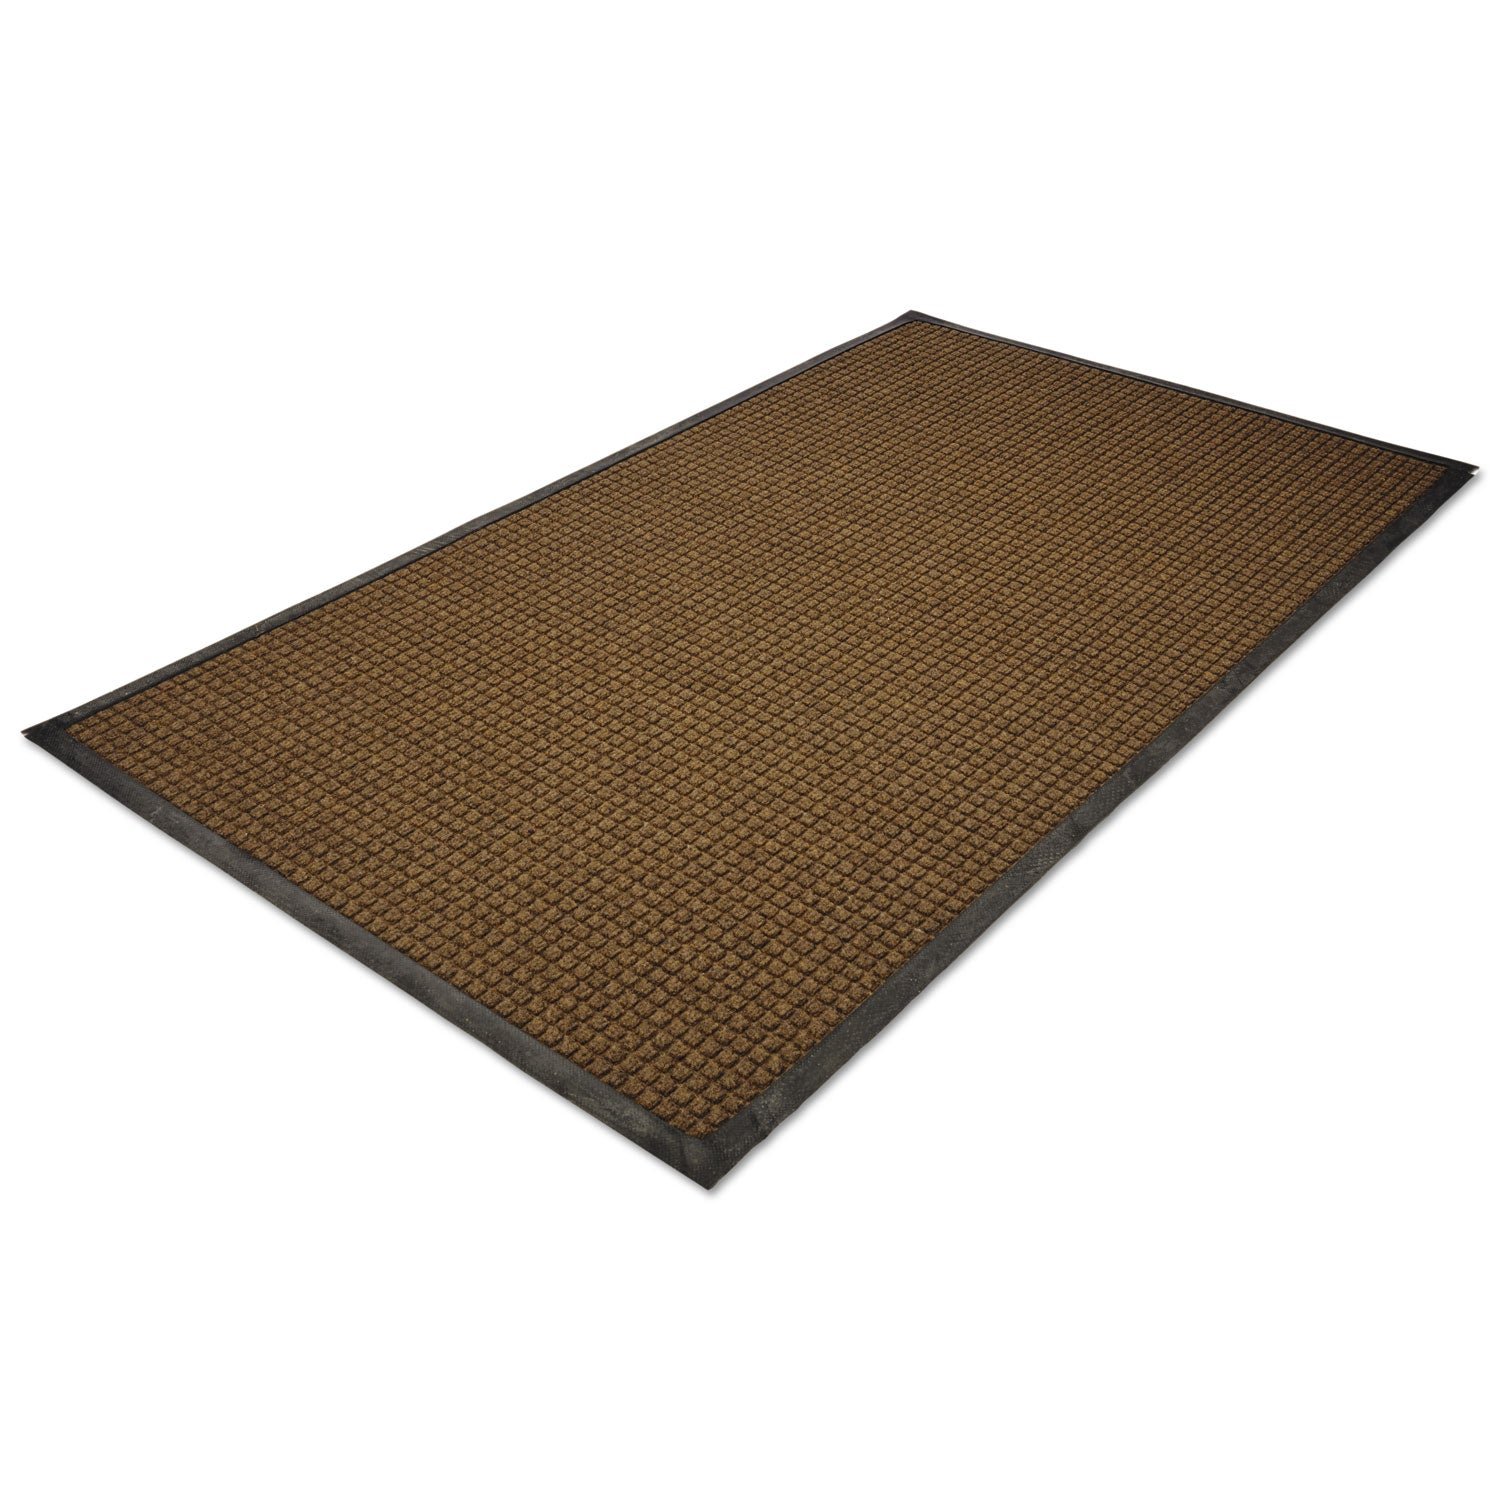 WaterGuard Indoor/Outdoor Scraper Mat, 36 x 60, Brown - 